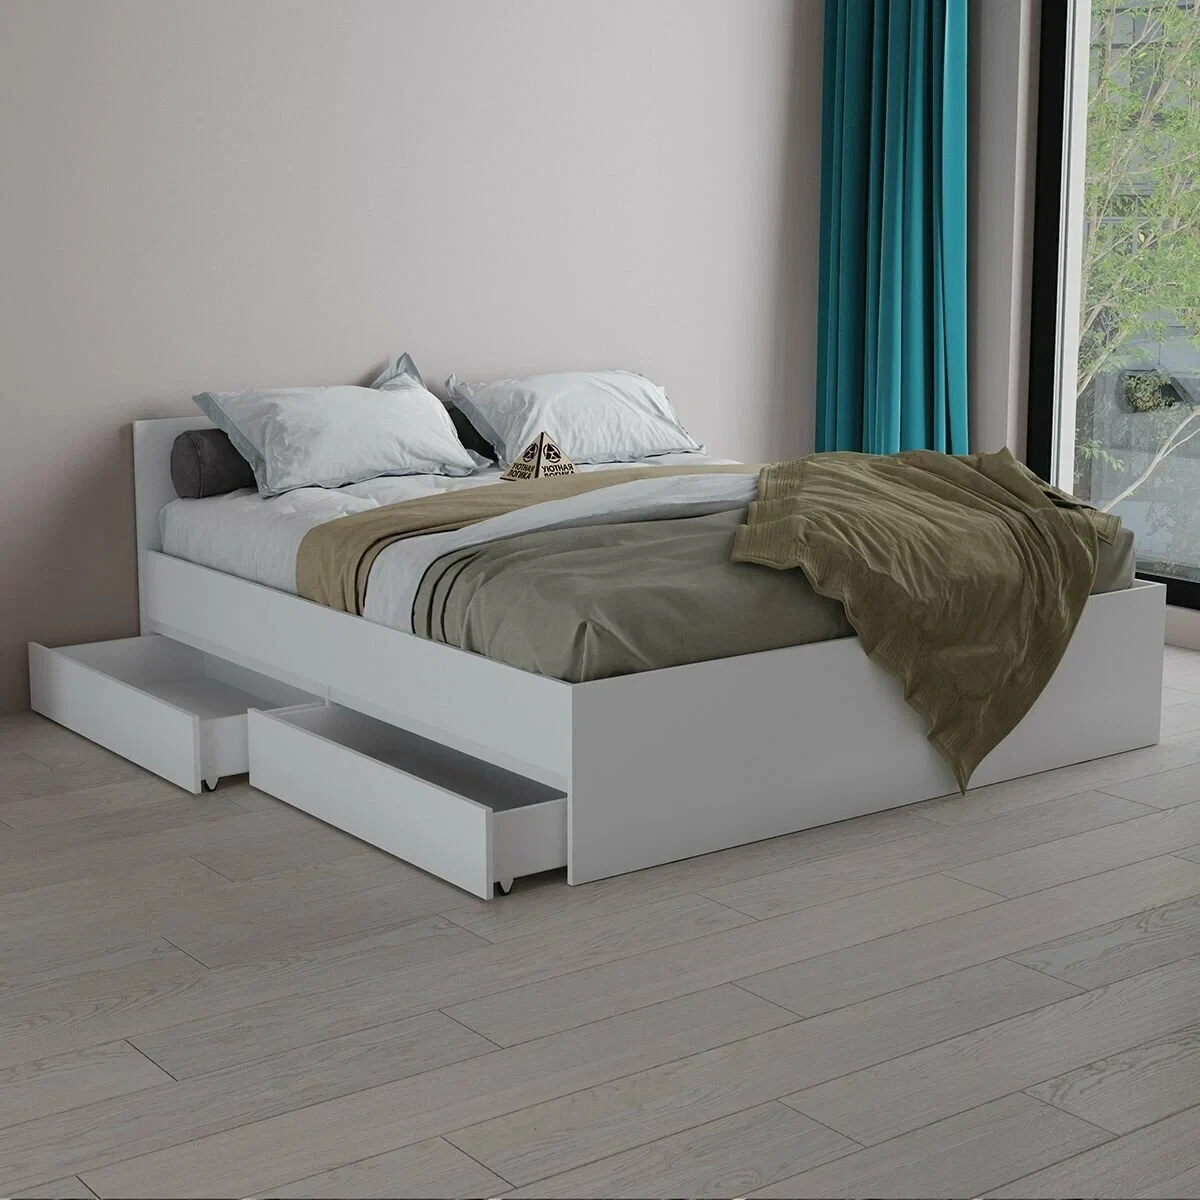 Двуспальная кровать Квазар, 180х200 см белый